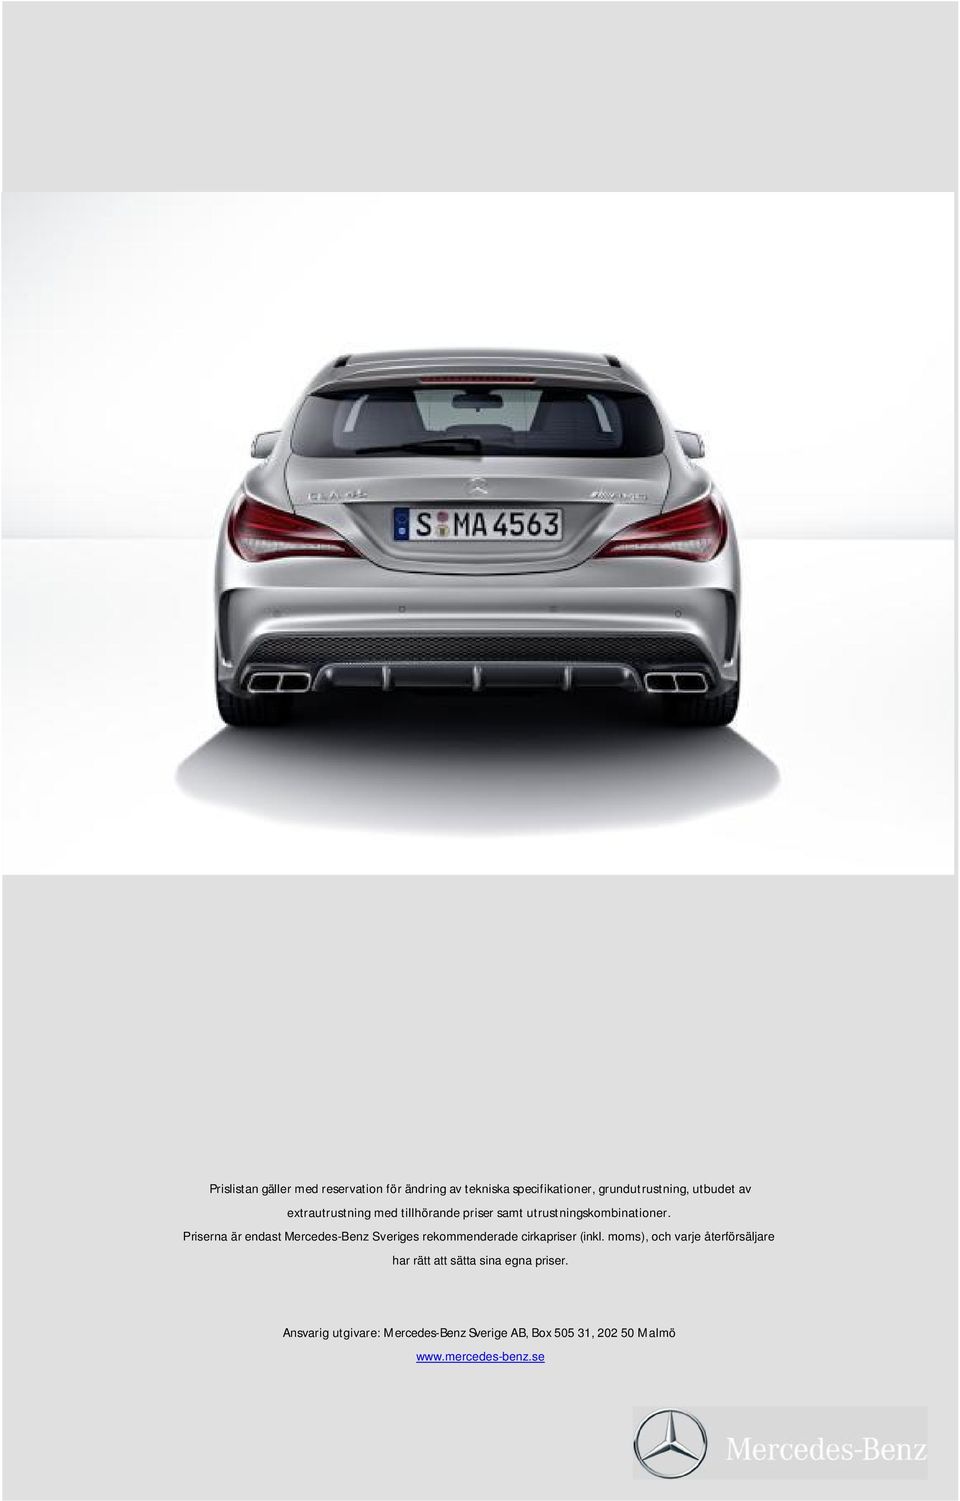 Priserna är endast Mercedes-Benz Sveriges rekommenderade cirkapriser (inkl.